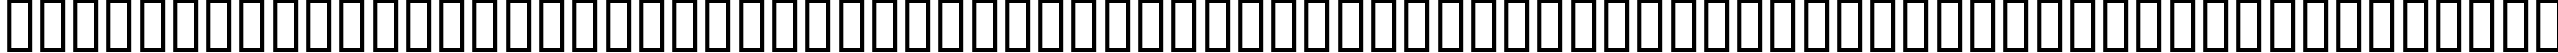 Пример написания английского алфавита шрифтом CountryBlueprint